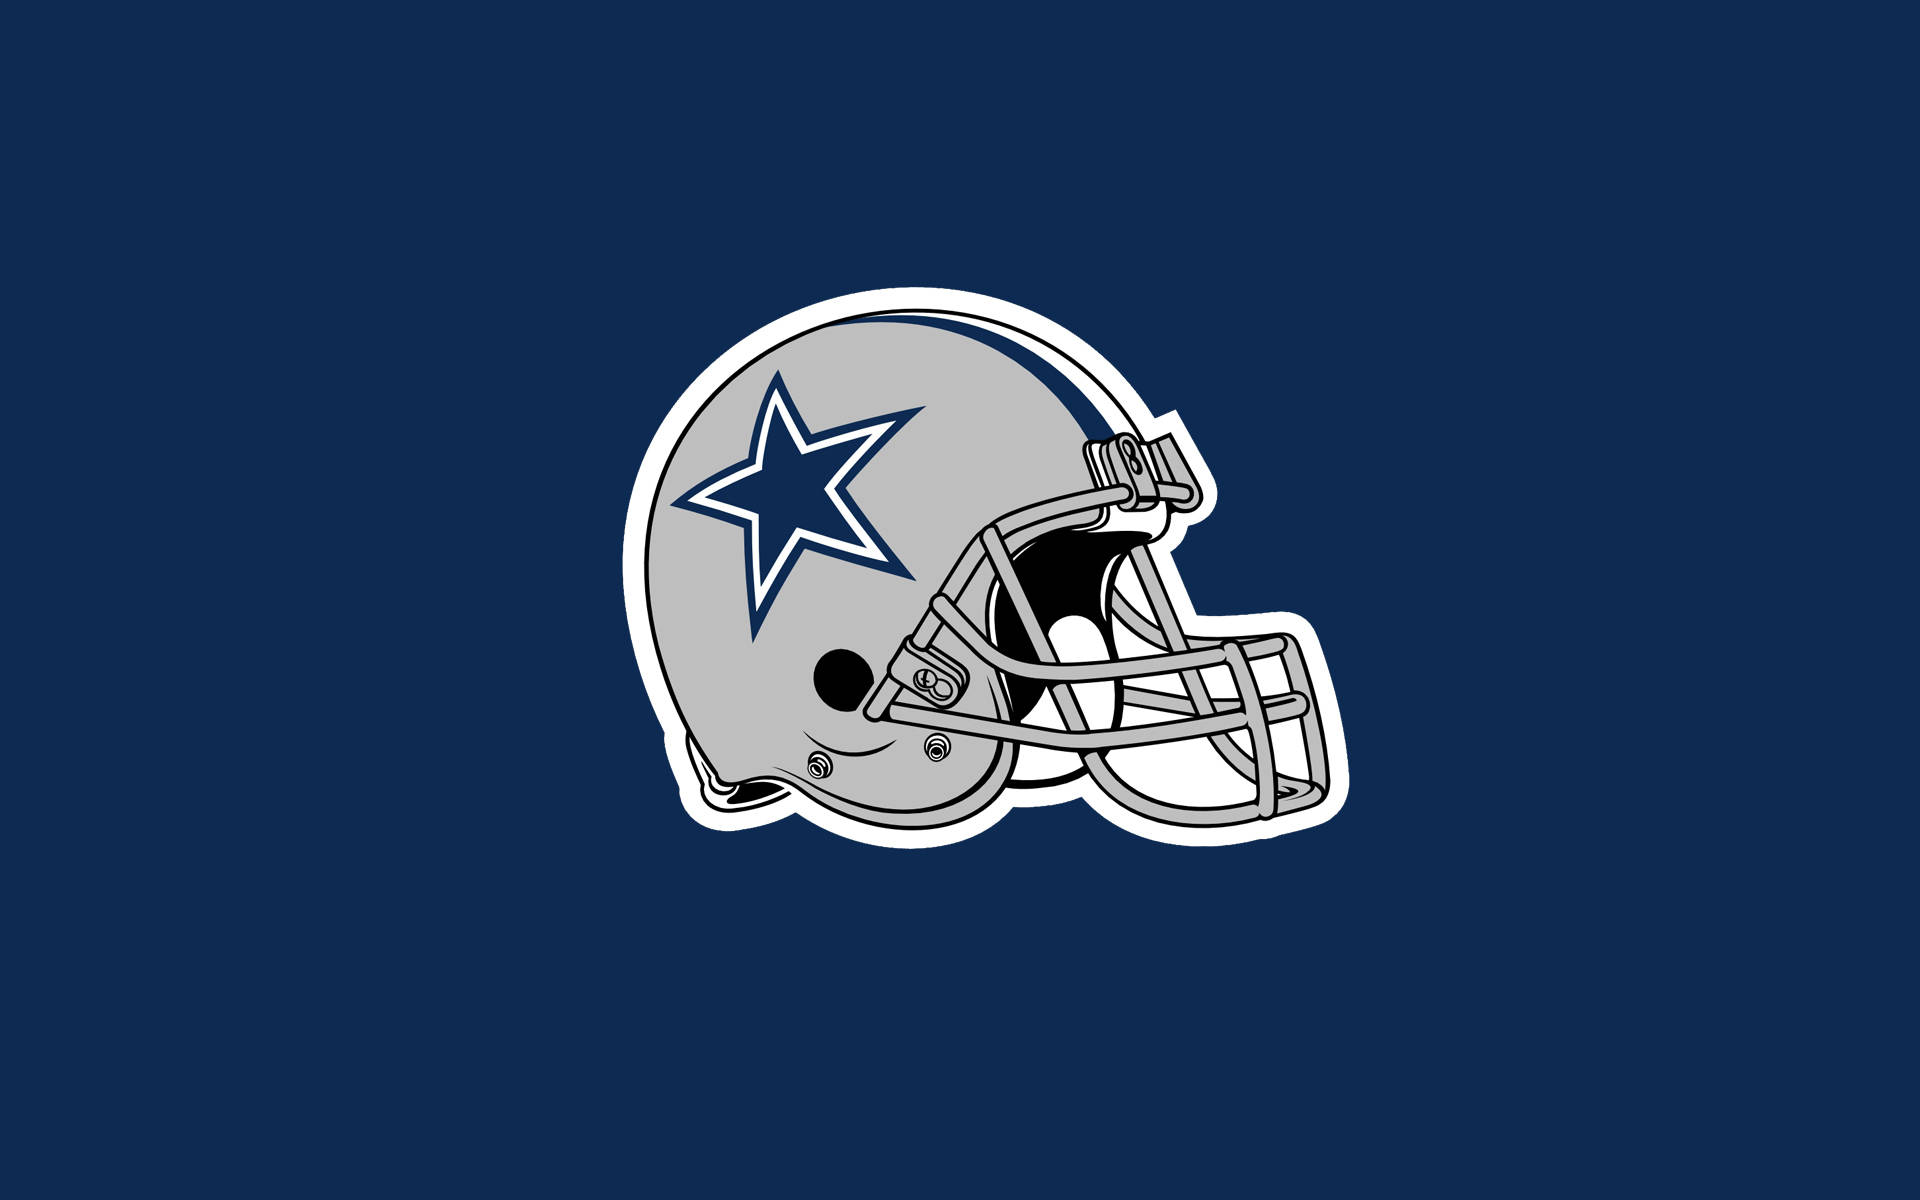 Gray Helmet With Dallas Cowboys Logo